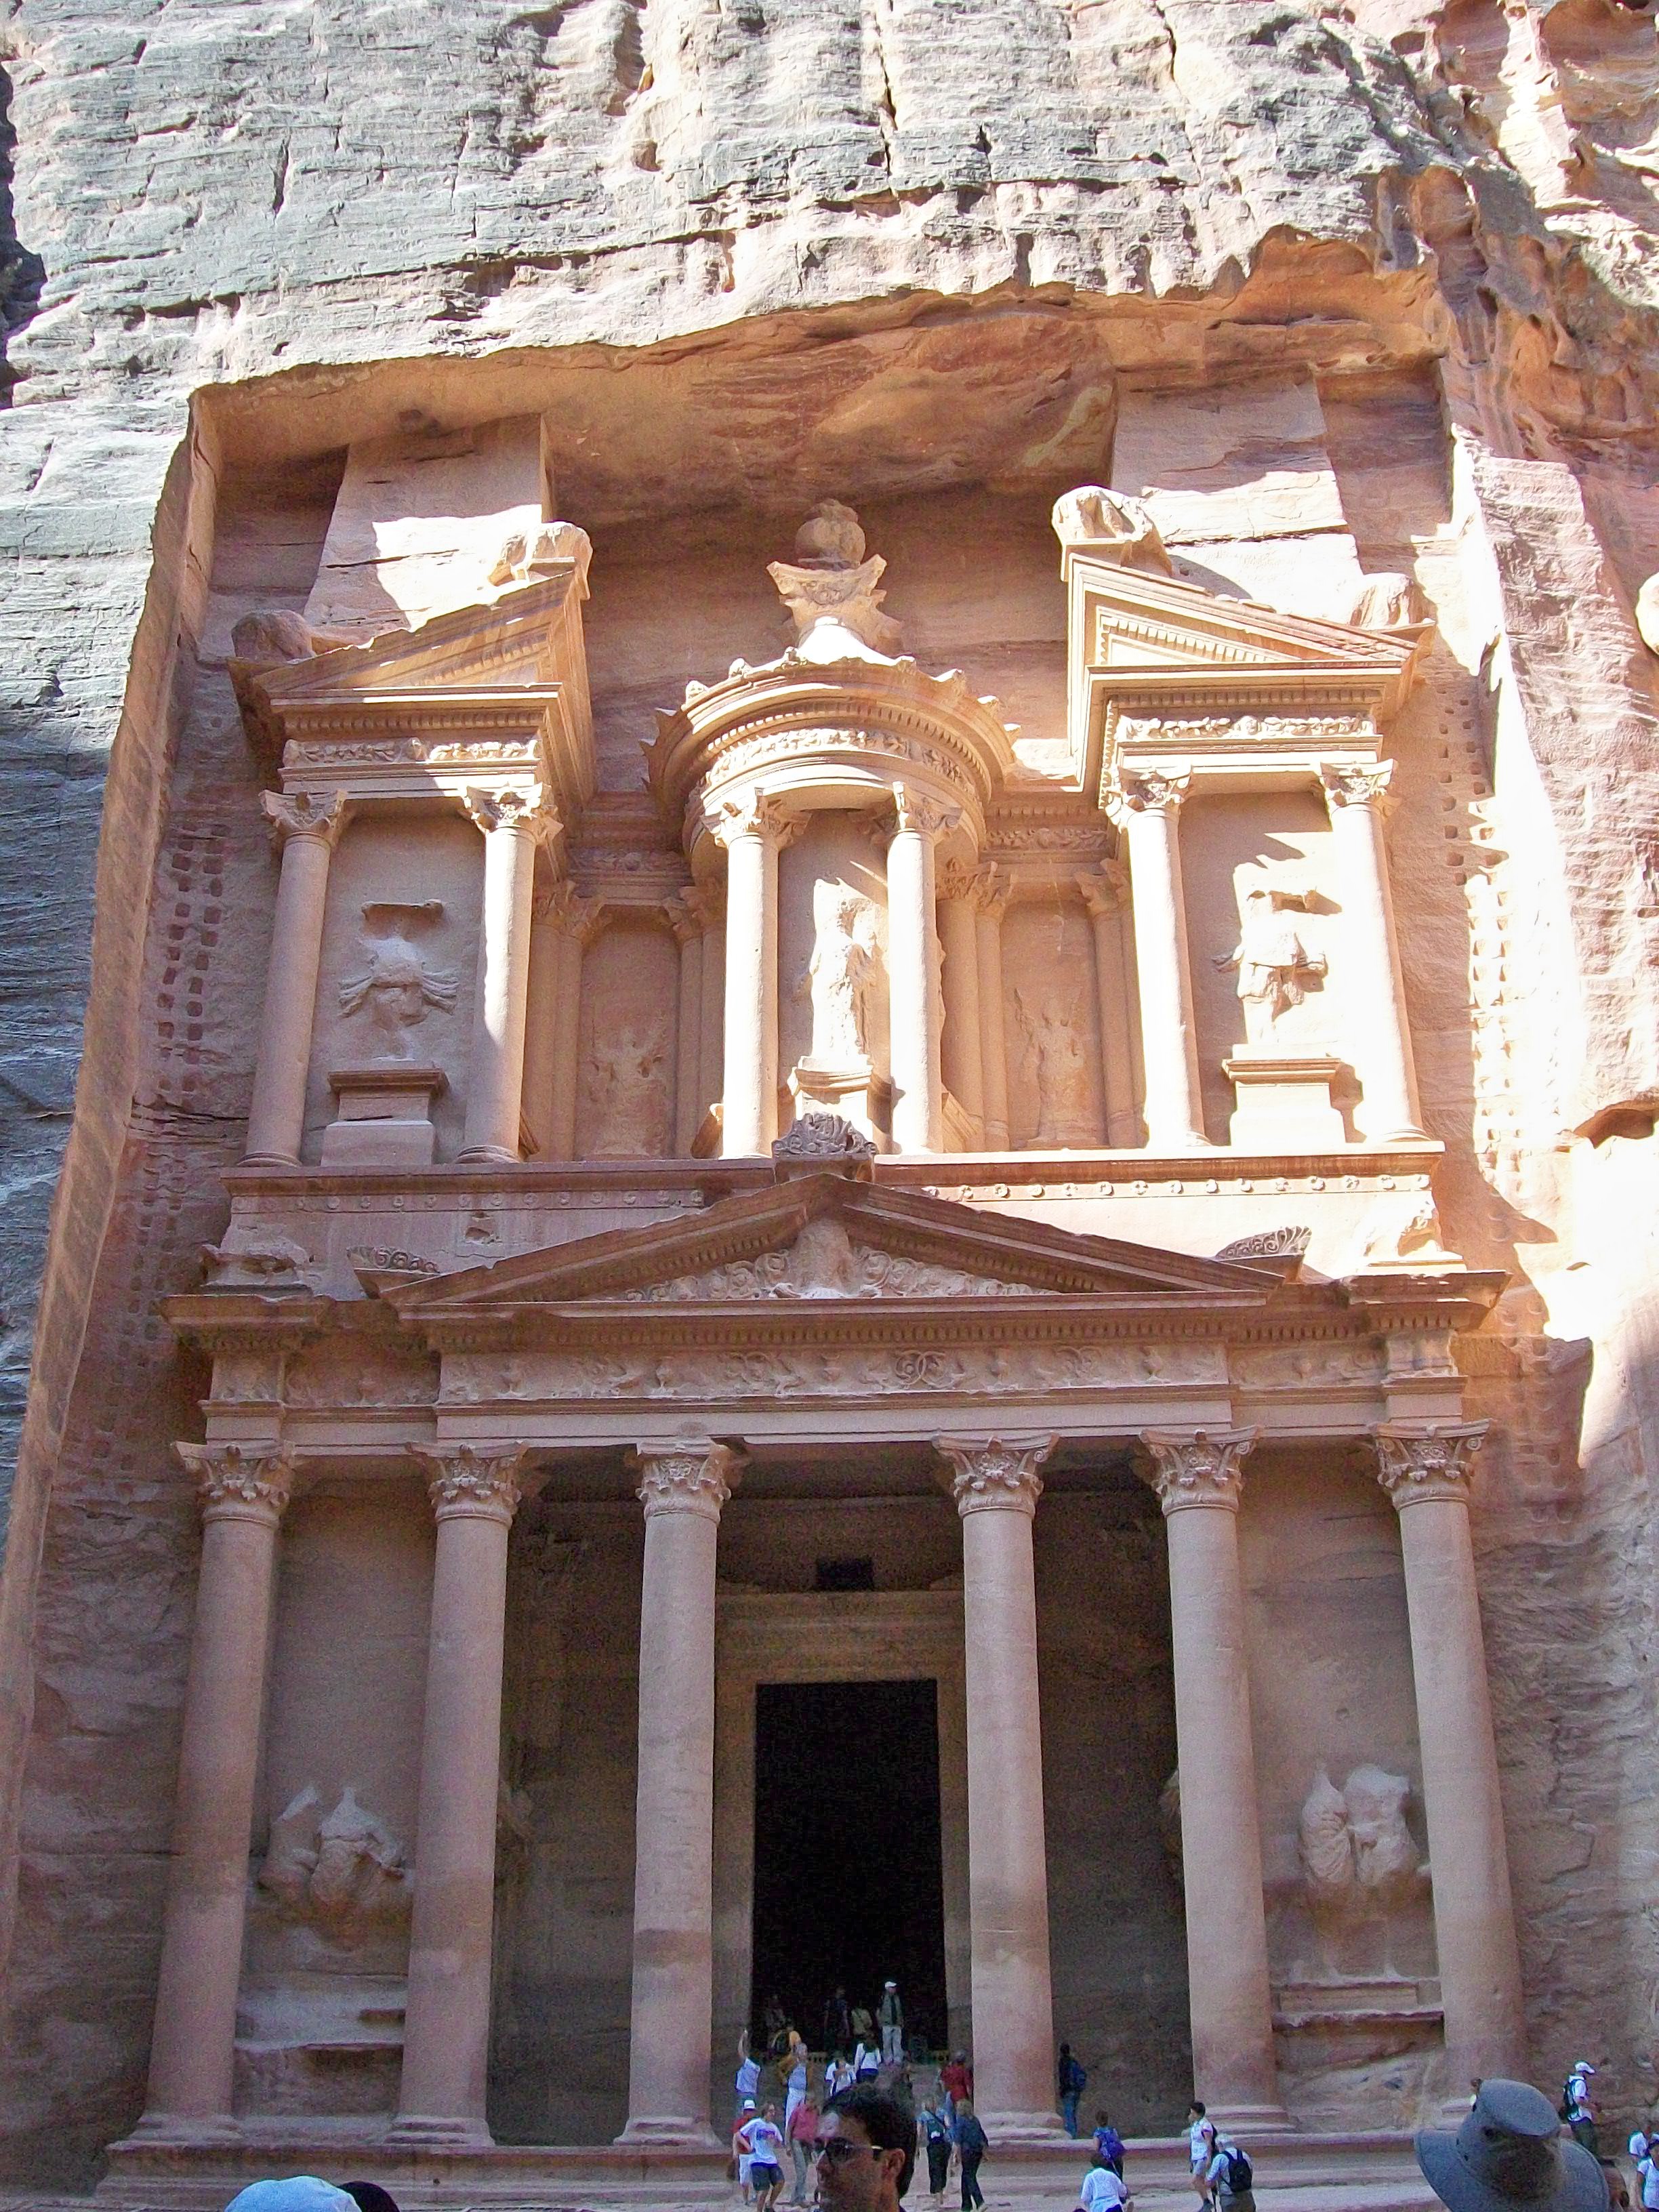 The city of Petra, Jordan